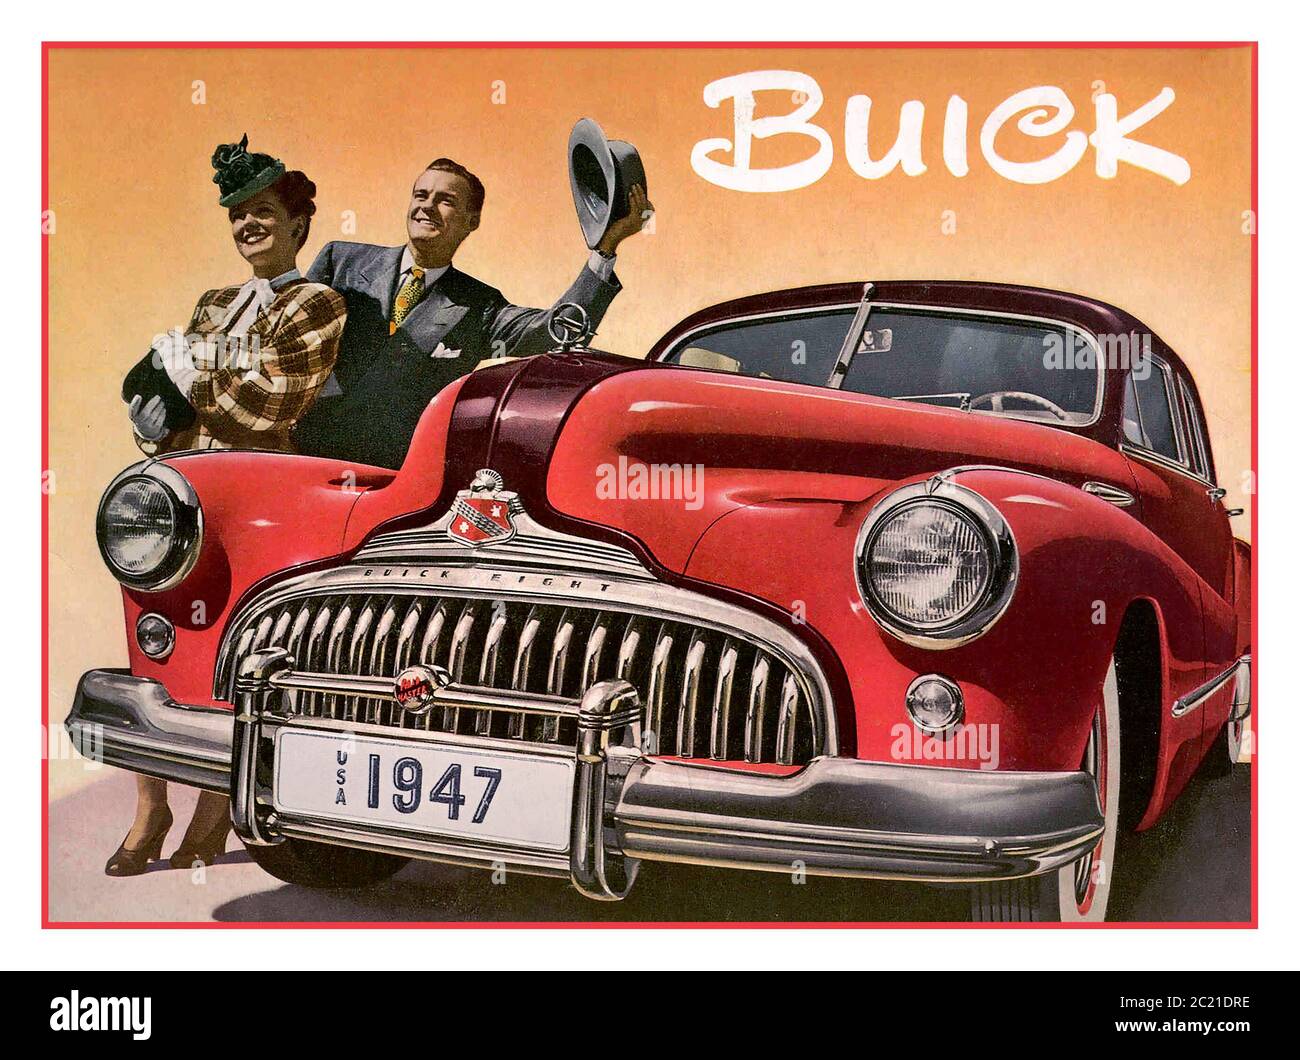 Affiche SUR L'automobile américaine vintage 1947 DE BUICK pour Buick Super Une voiture pleine grandeur de 248 L (4.1 po cu) Buick 1947 – affiche publicitaire promotionnelle // après la guerre mondiale II American car production flamboyant années 1940 style de mode Amérique USA Banque D'Images